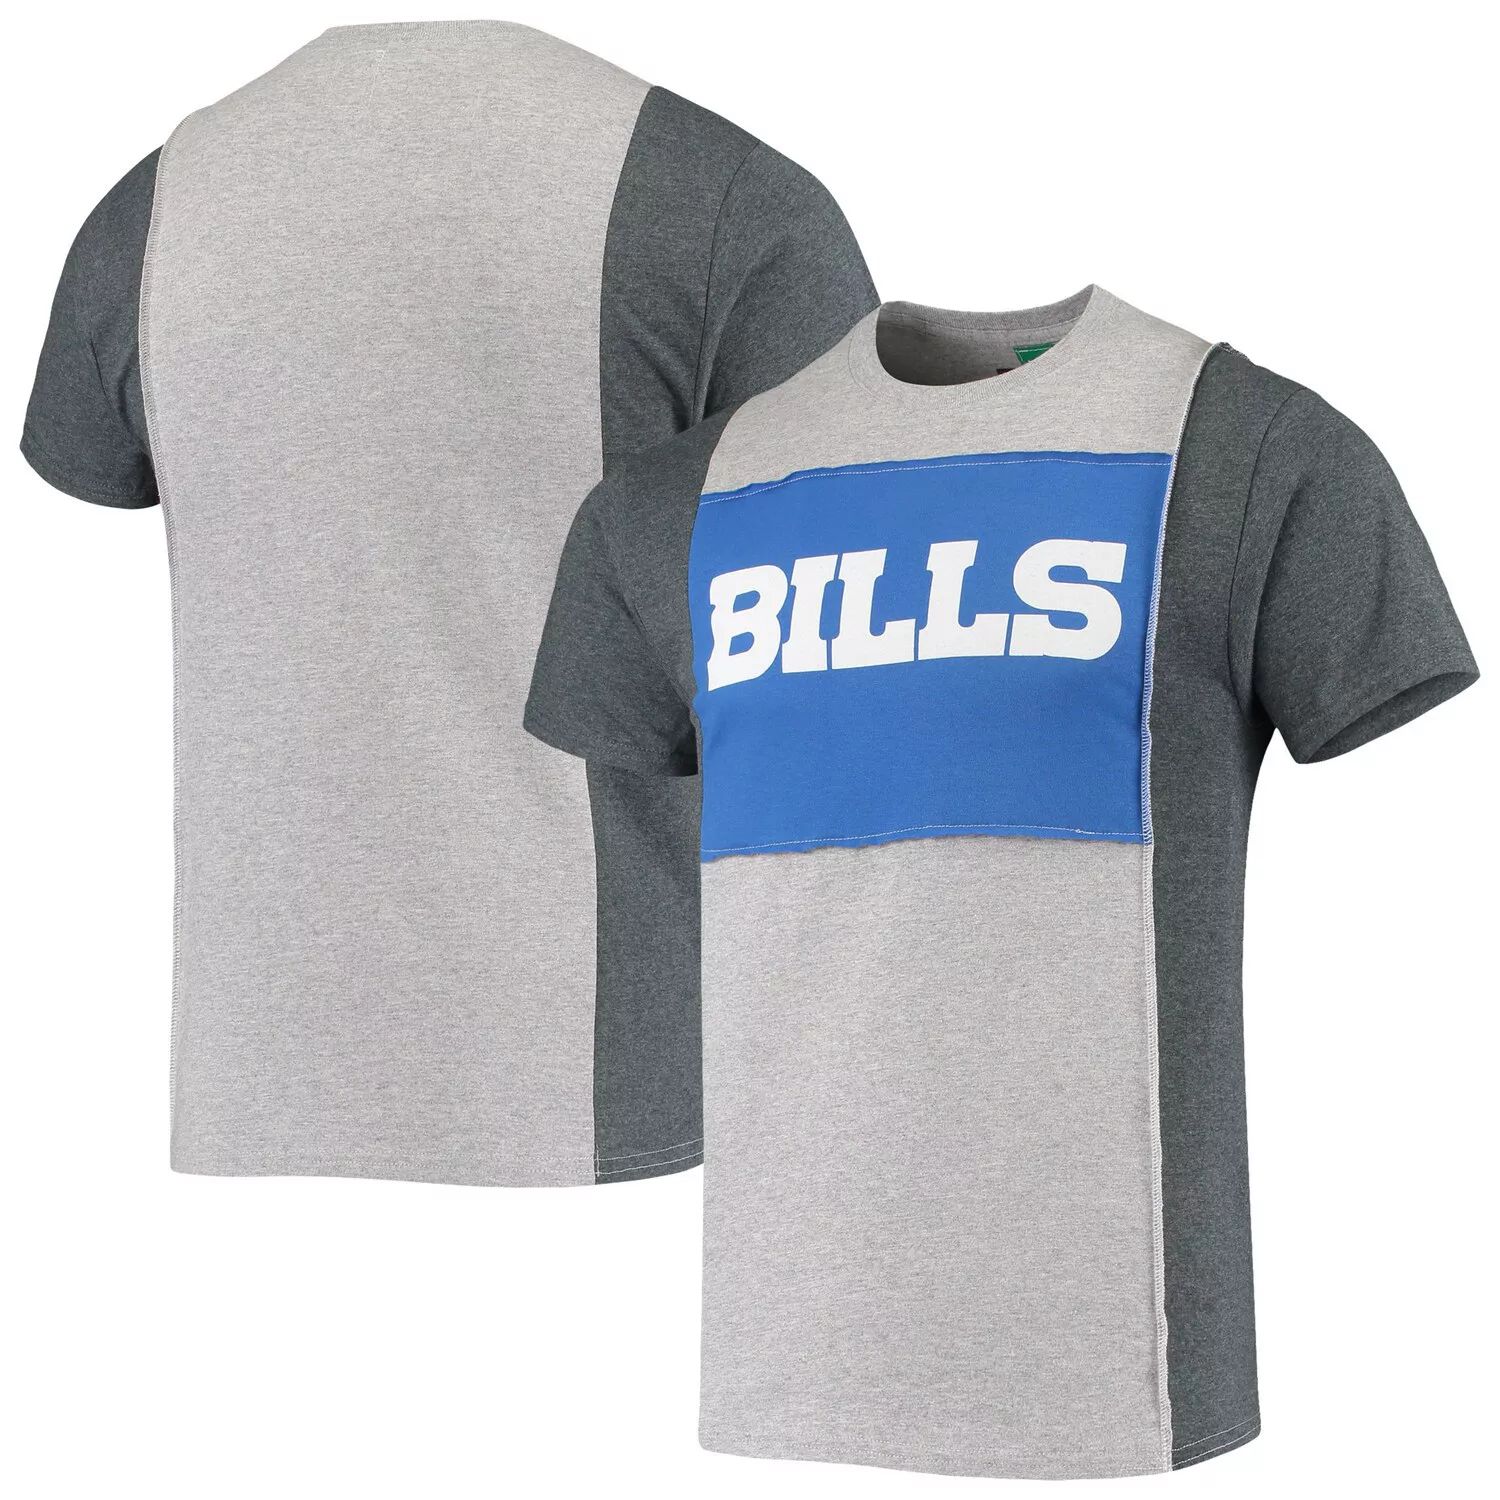 Мужская футболка Refried Apparel серого цвета с разрезом Buffalo Bills мужская футболка с разрезом san francisco 49ers черного и серого цвета с меланжевым покрытием refried apparel мульти